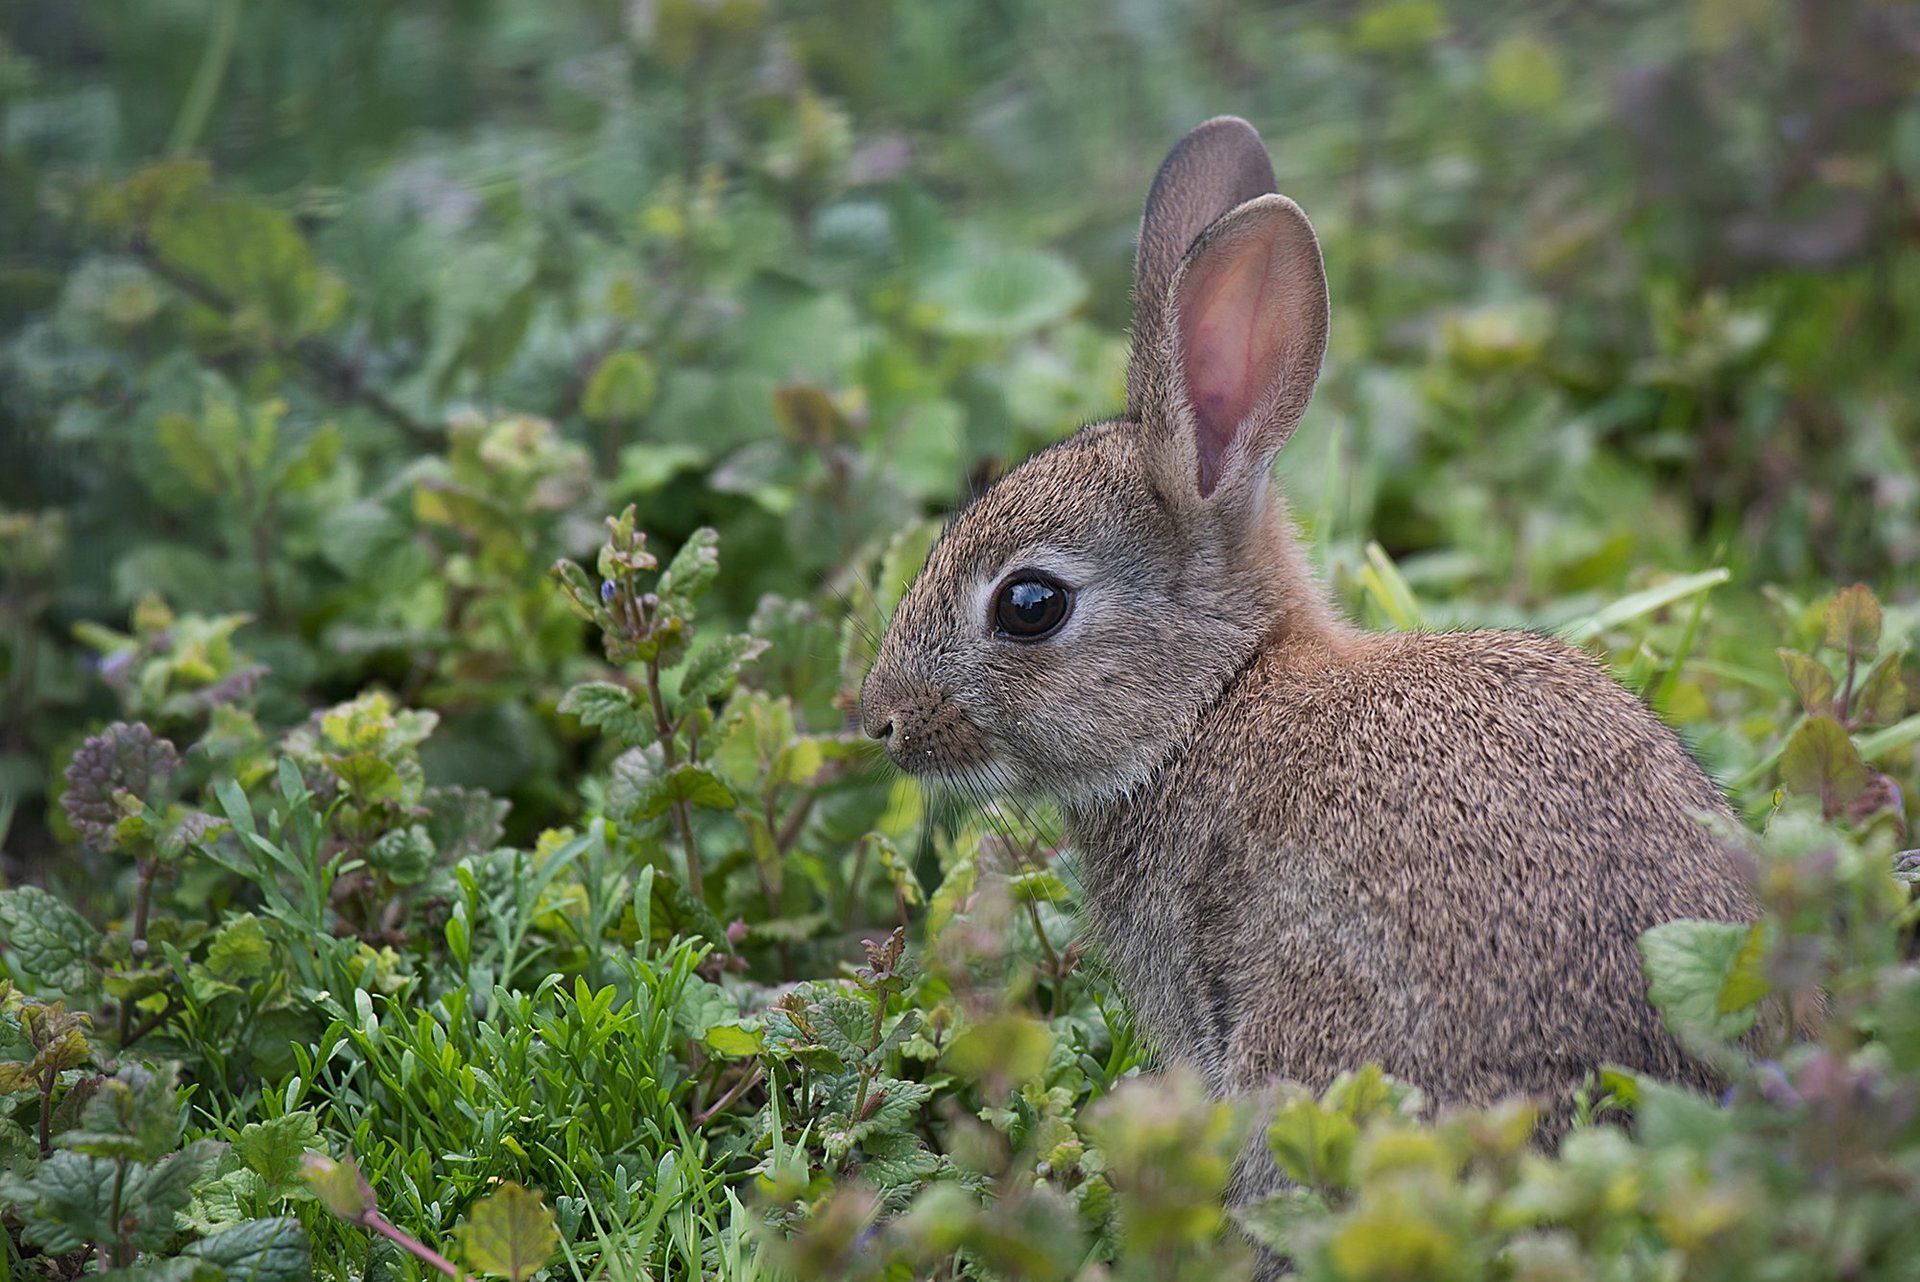 Wild rabbit in a bush